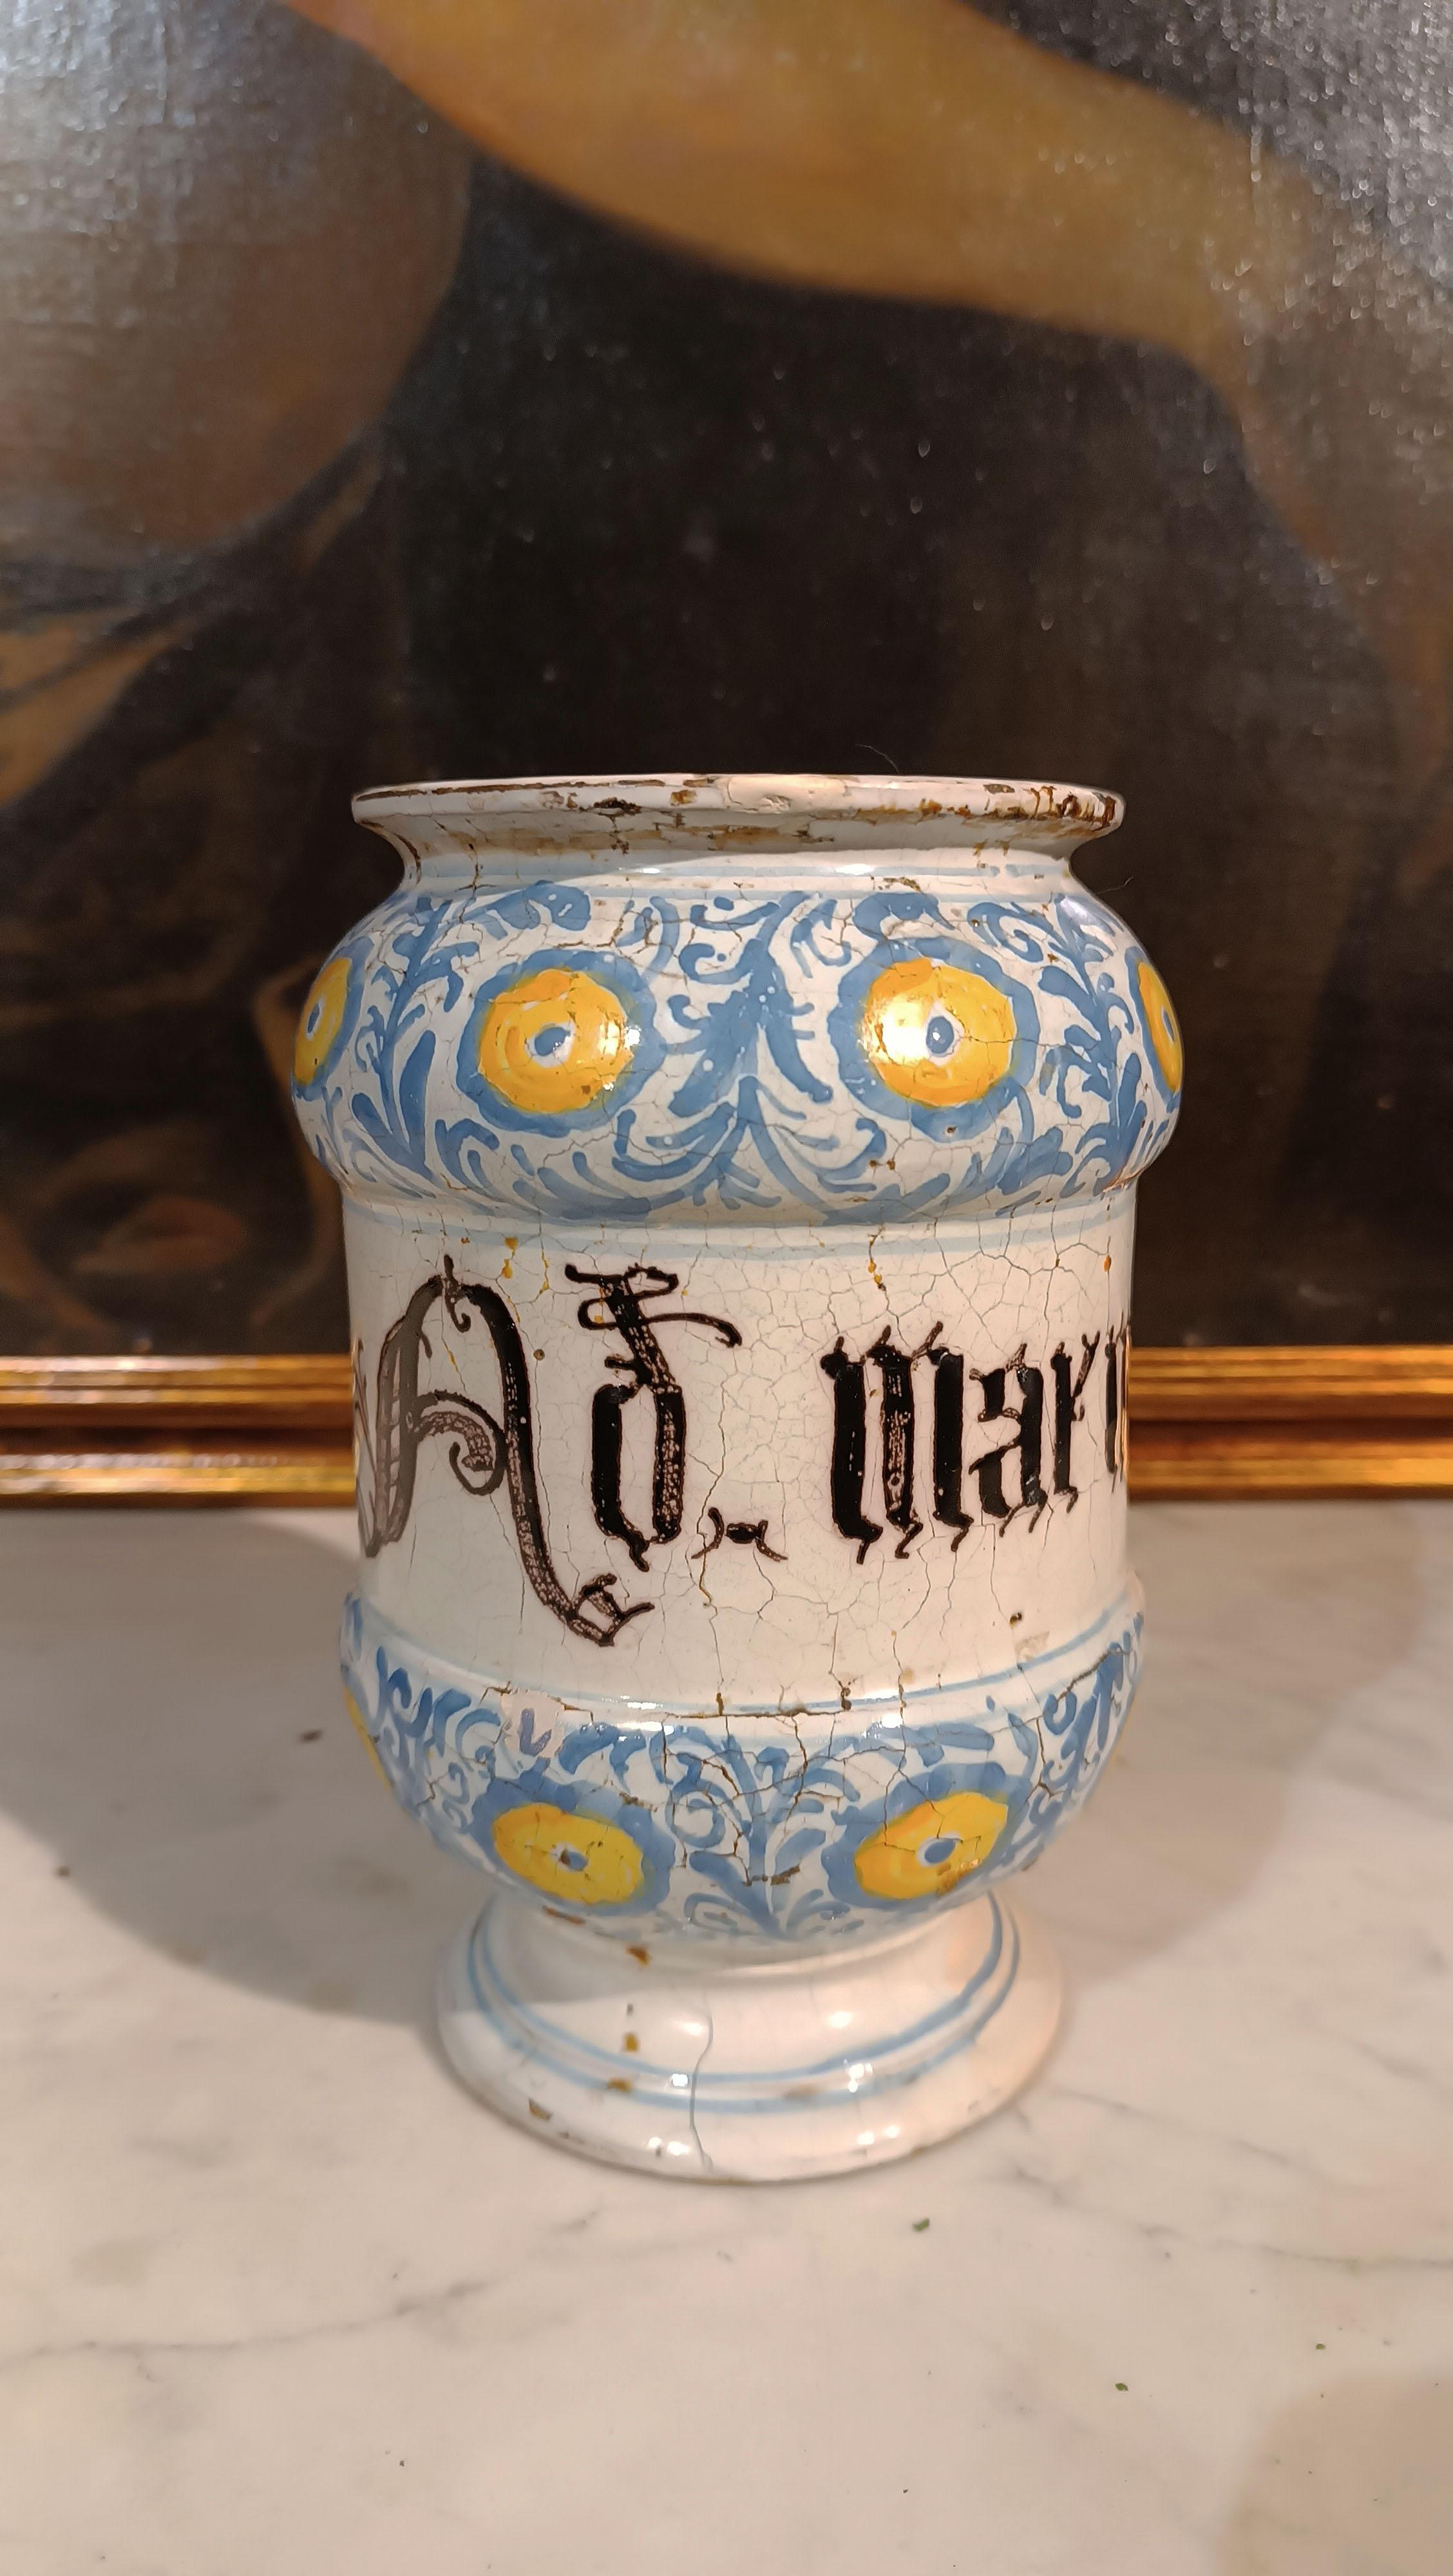 Apotheke maiolica albarello, mit einer besonderen Spulenform. Die vorherrschende Glasur der Keramik ist weiß, darauf befinden sich Verzierungen in Blau und Gelb. Diese Verzierungen bestehen hauptsächlich aus phytomorphen Motiven, die stilisierte